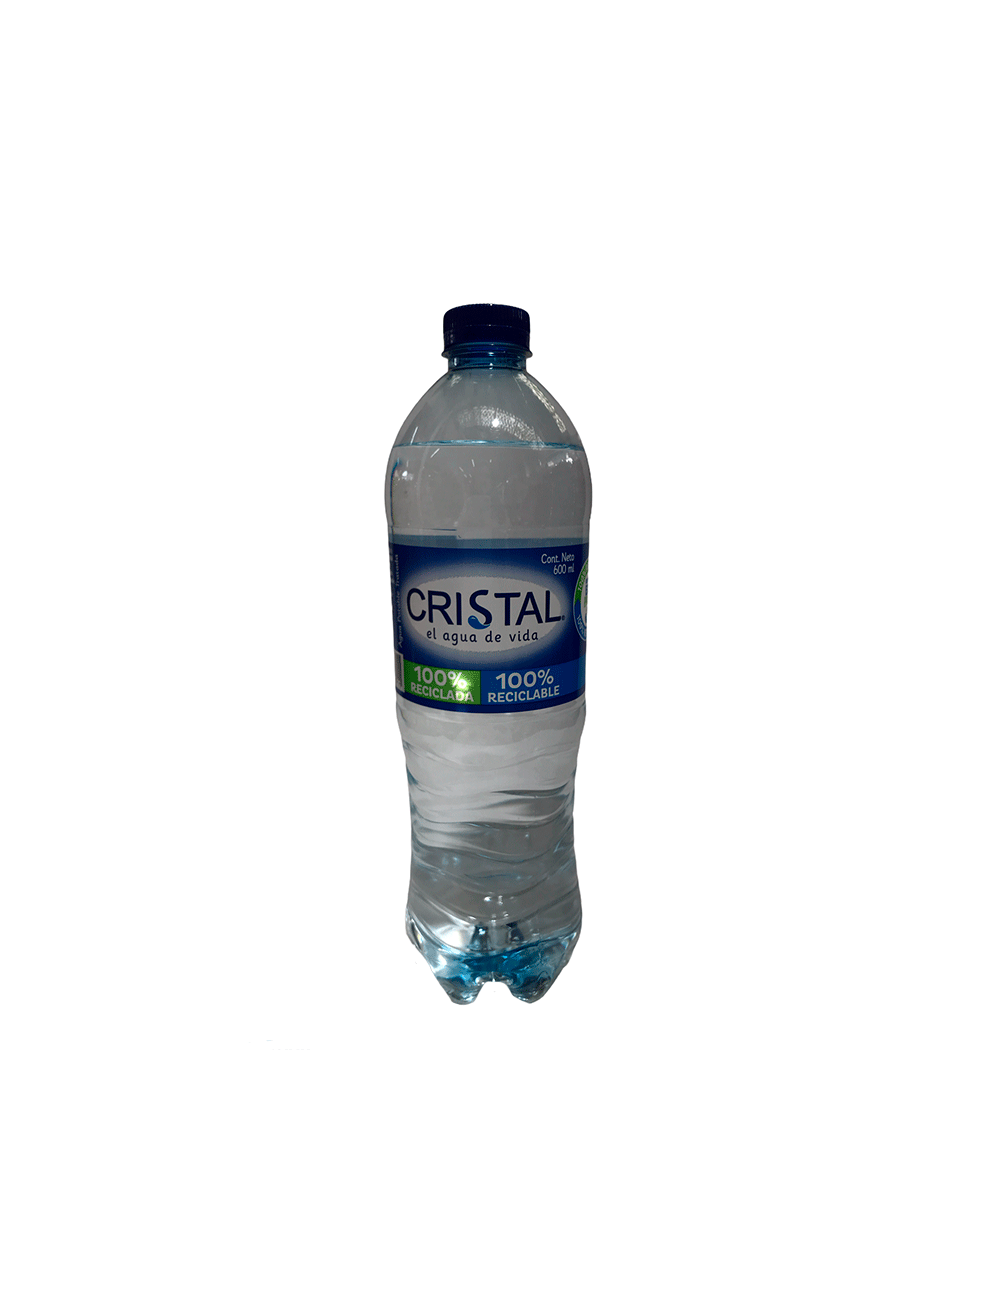 AGUA CRISTAL PET UND 600ML, botella agua cristal